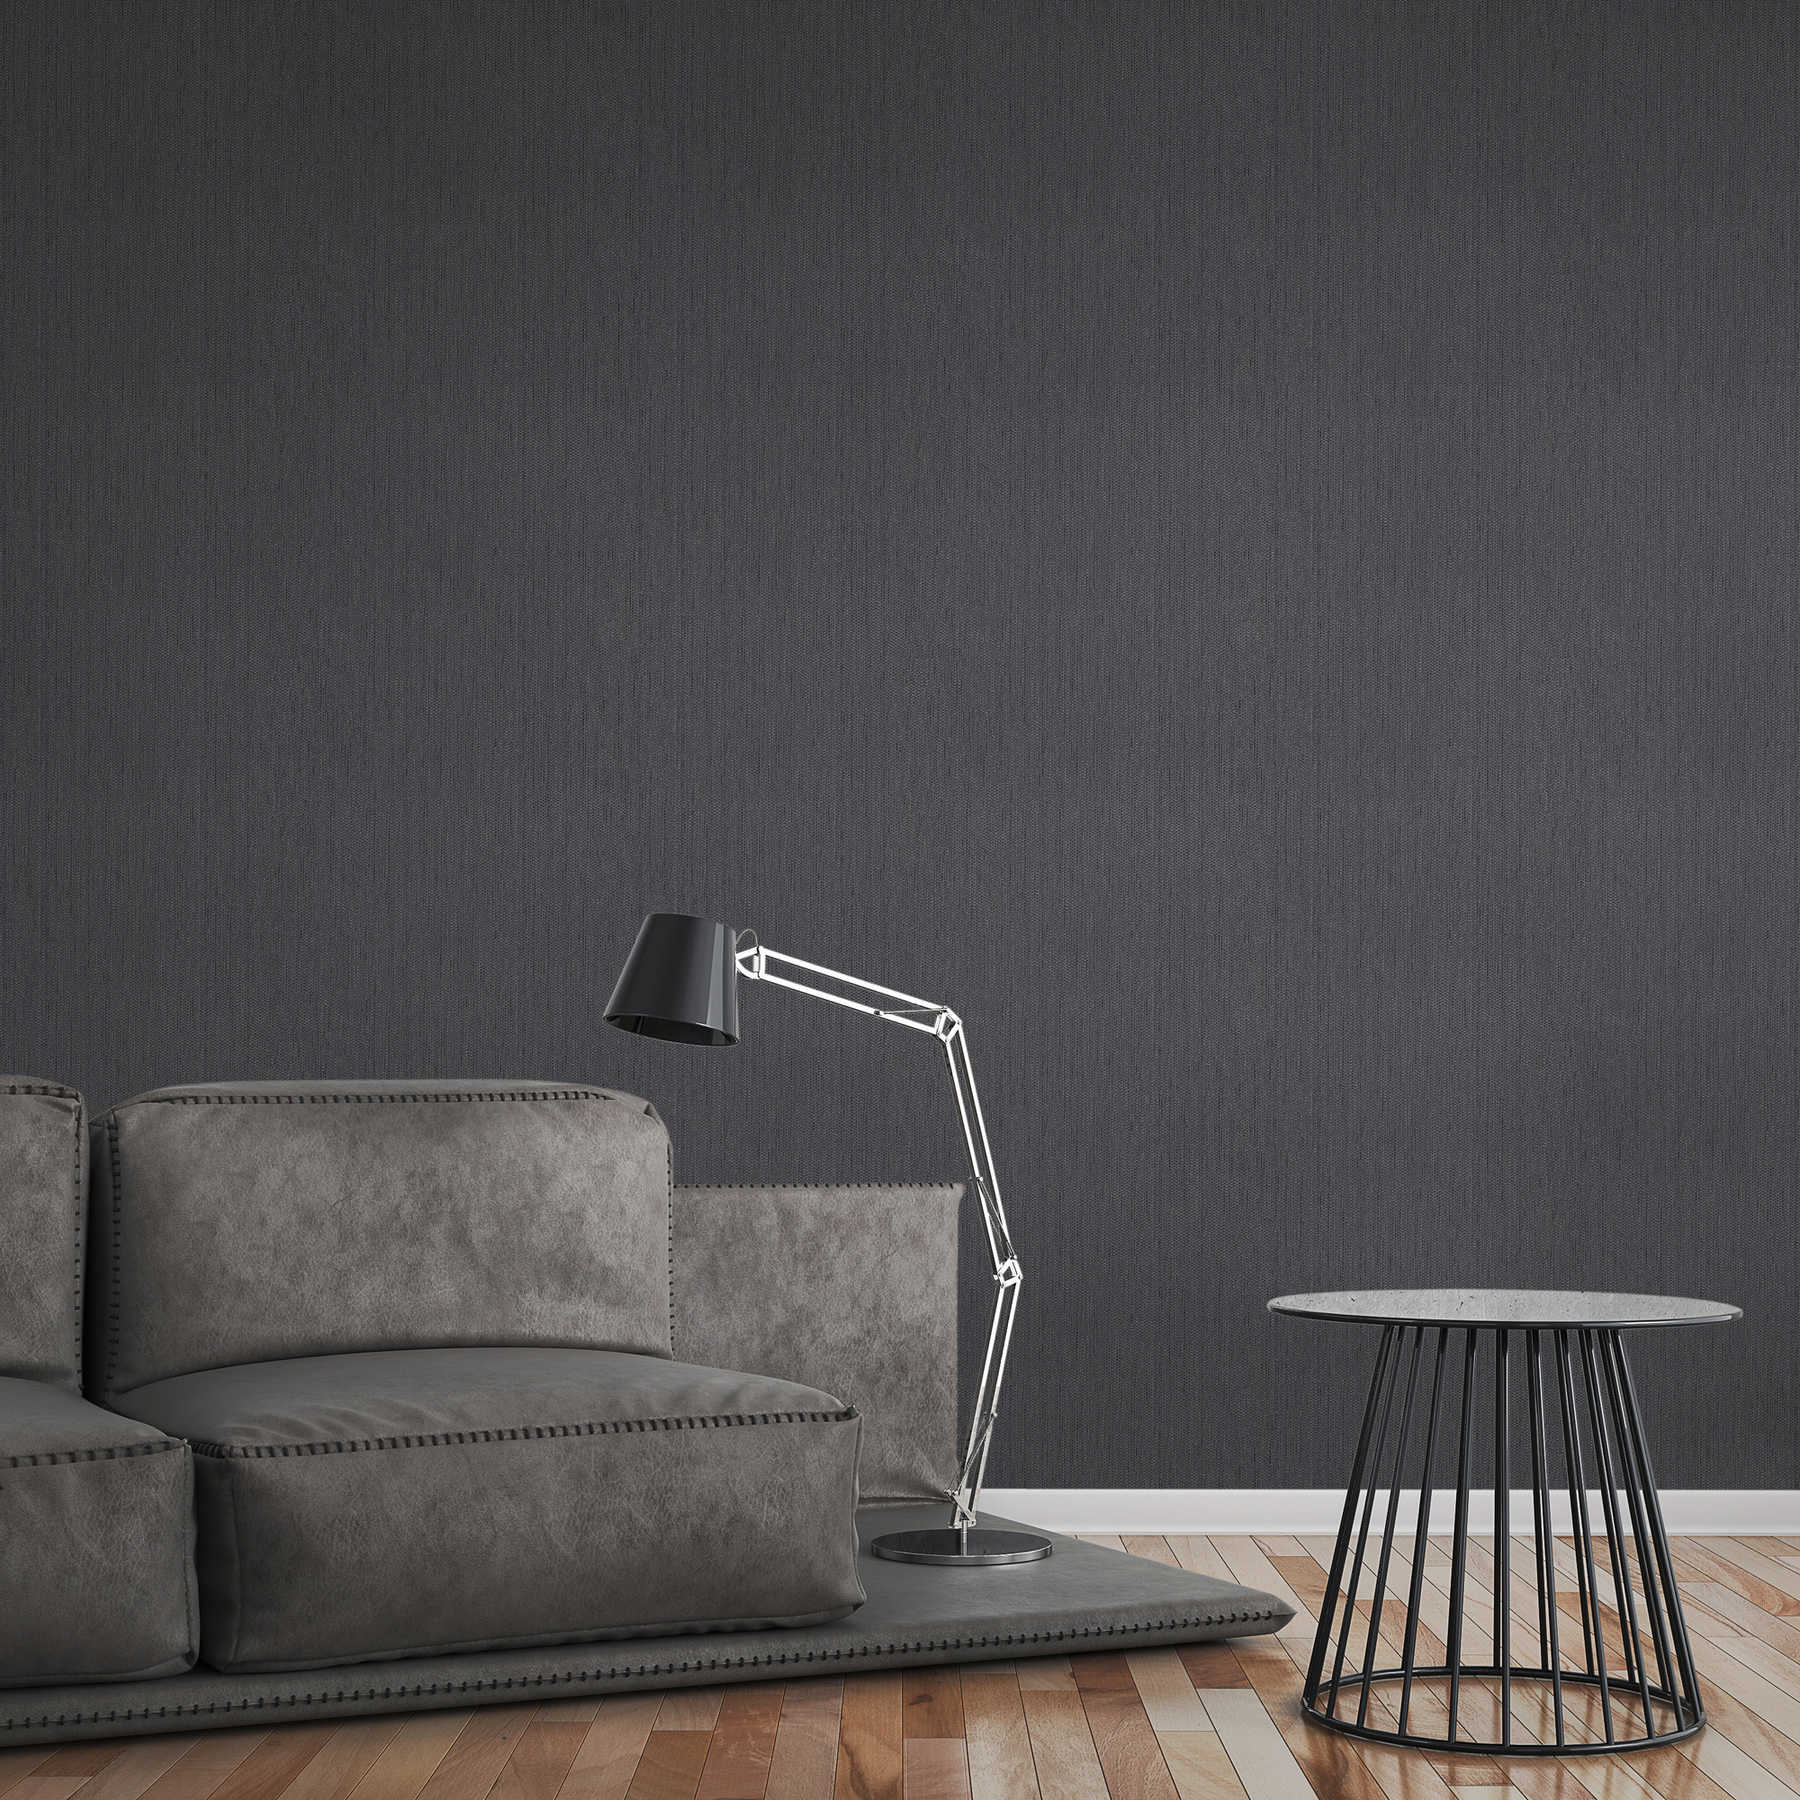             Papel pintado de aspecto de lino con estructura textil - gris, negro
        